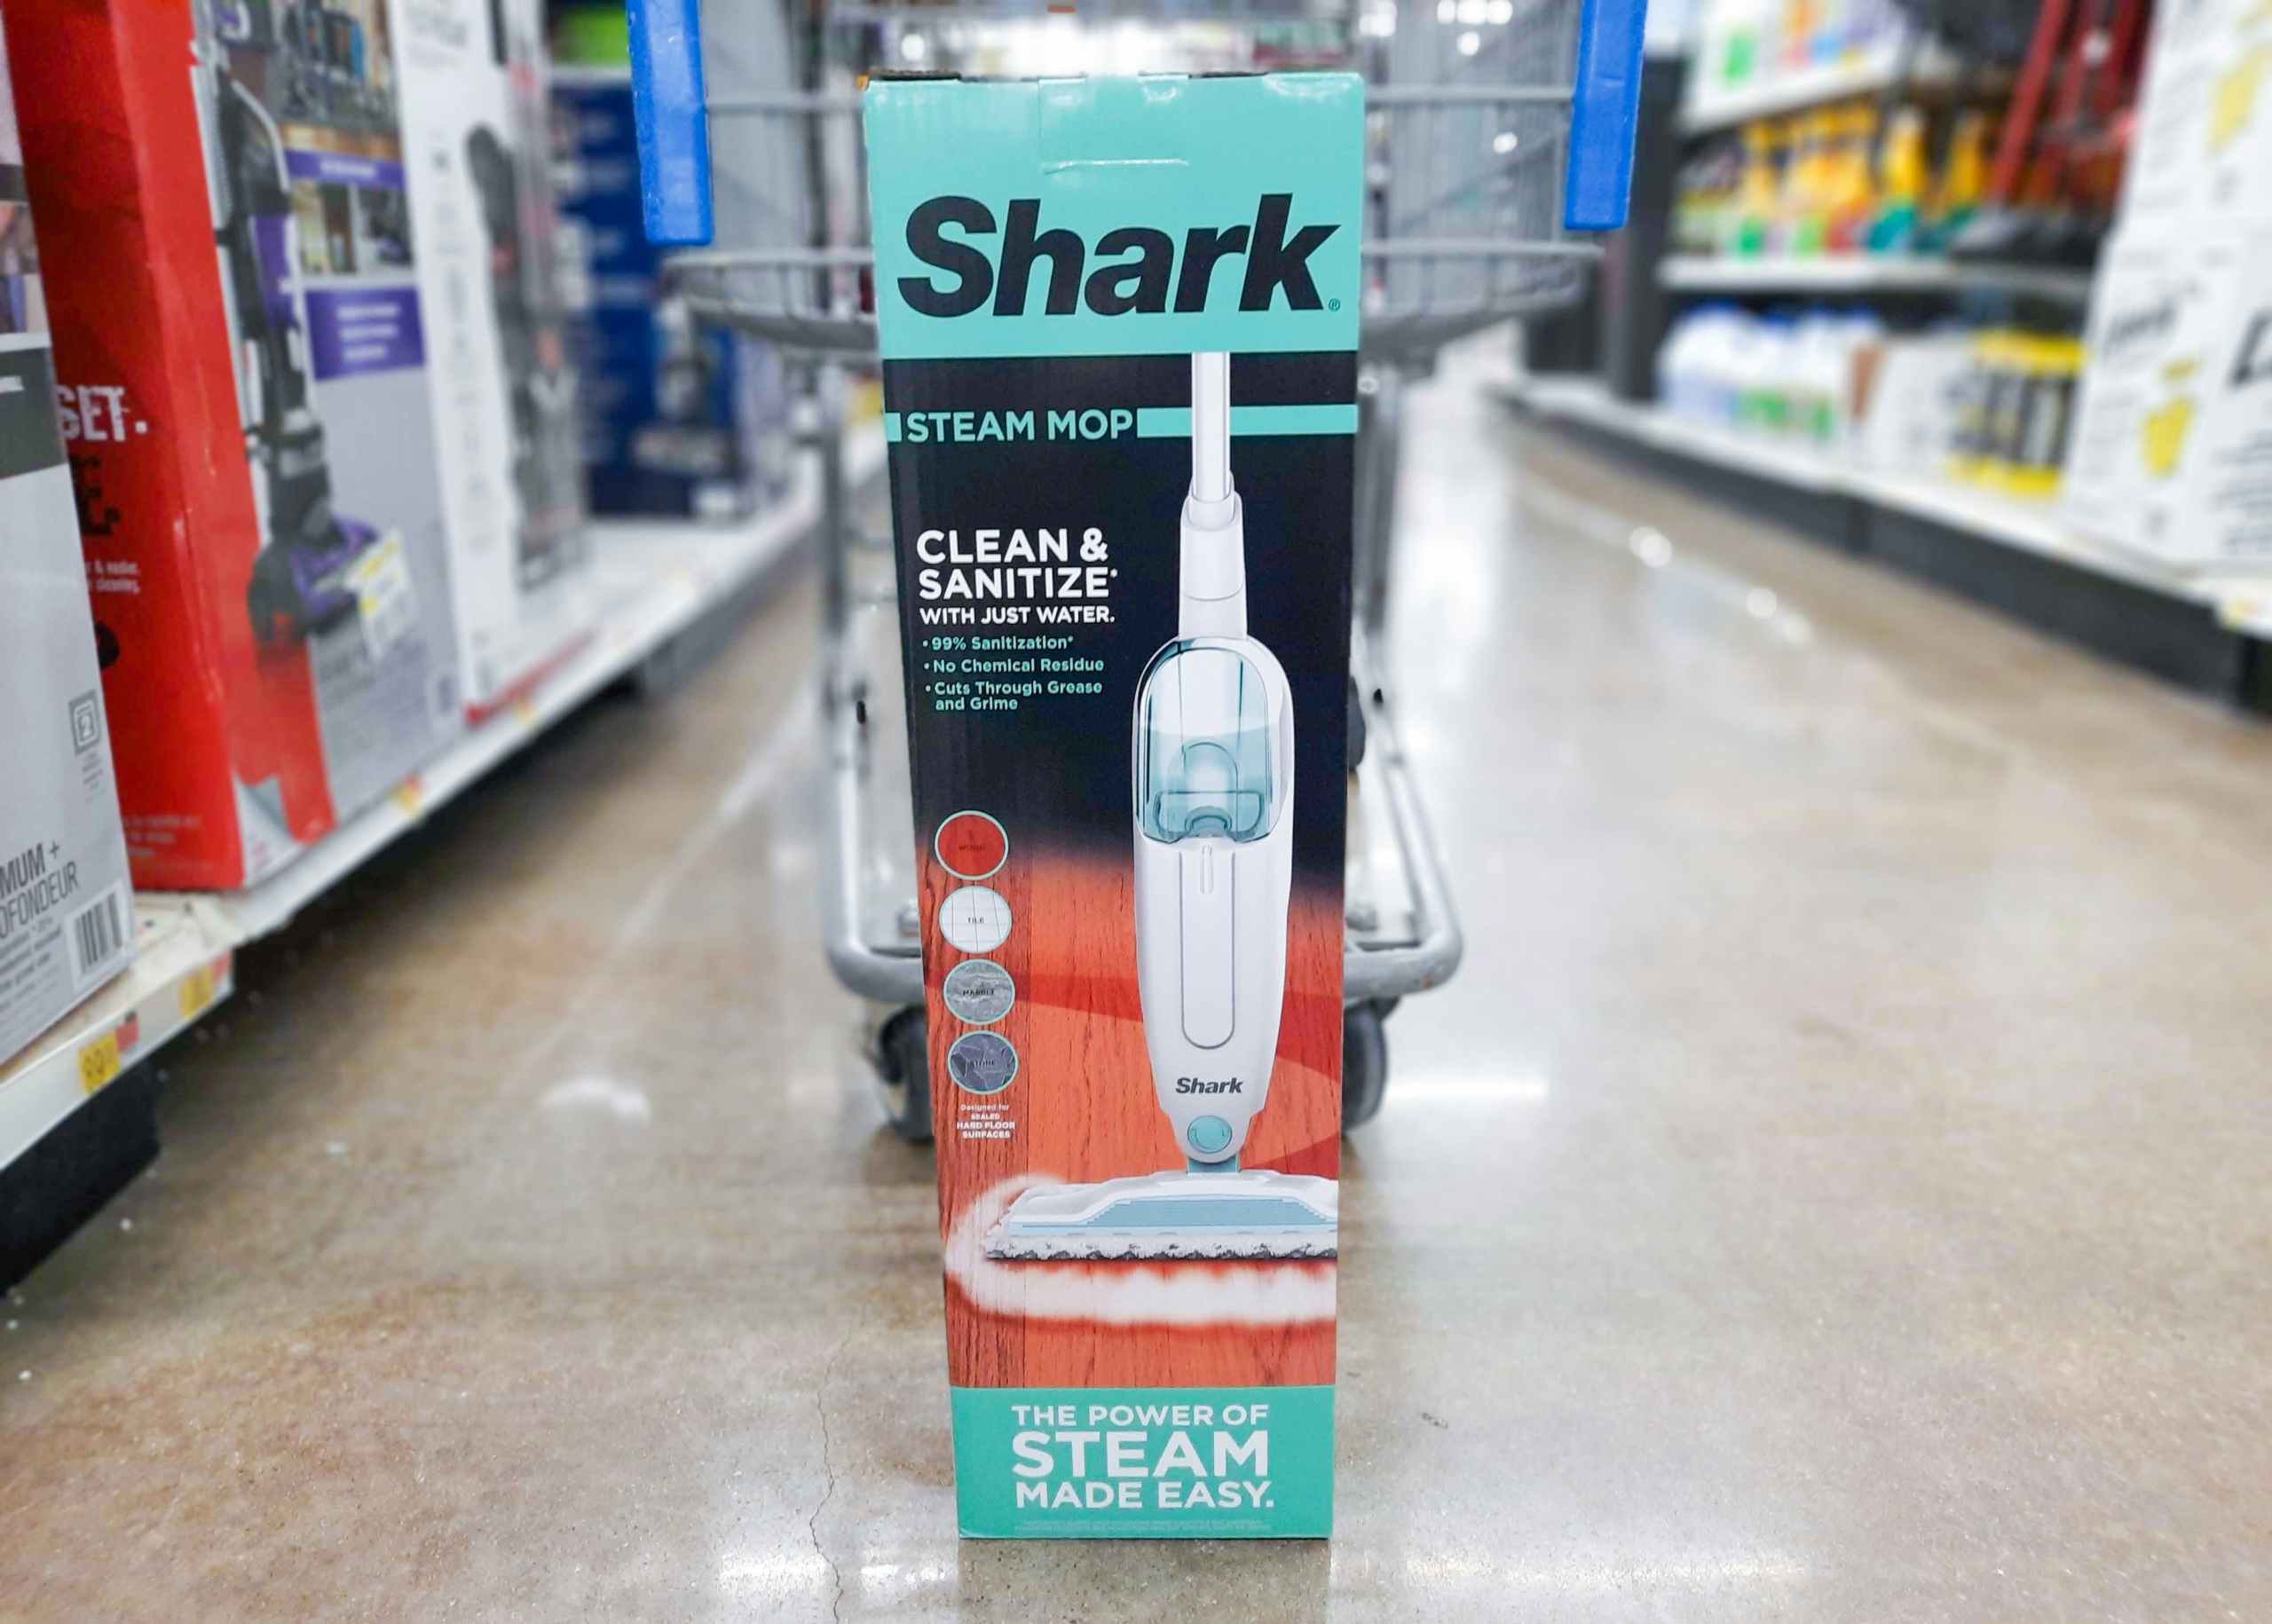 Shark Steam Mop at Walmart